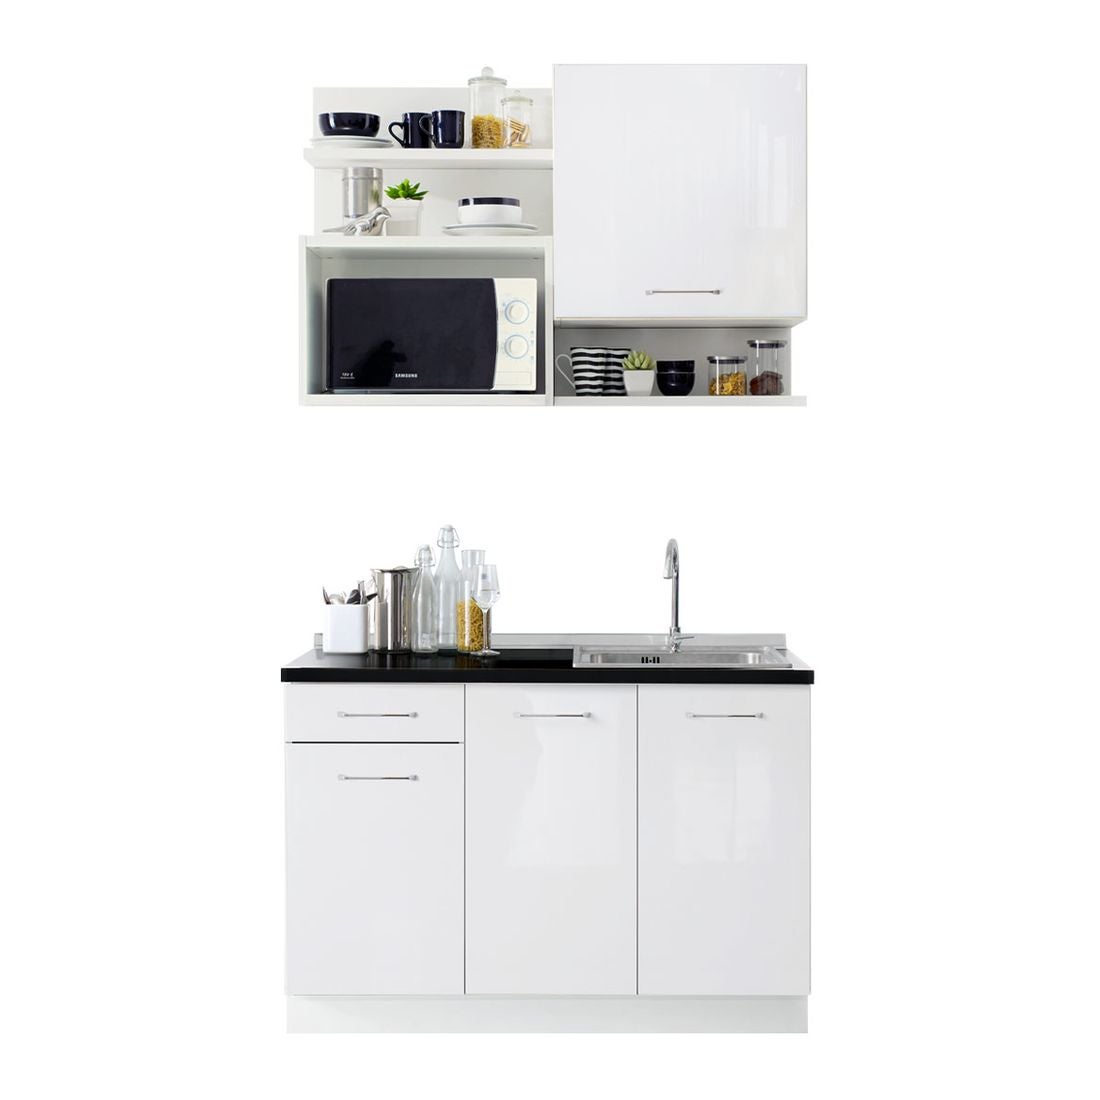 ห้องครัวขนาดกะทัดรัดและครัวสำเร็จรูป ขนาด 120 ซม. รุ่น Kourmet สีขาว-01